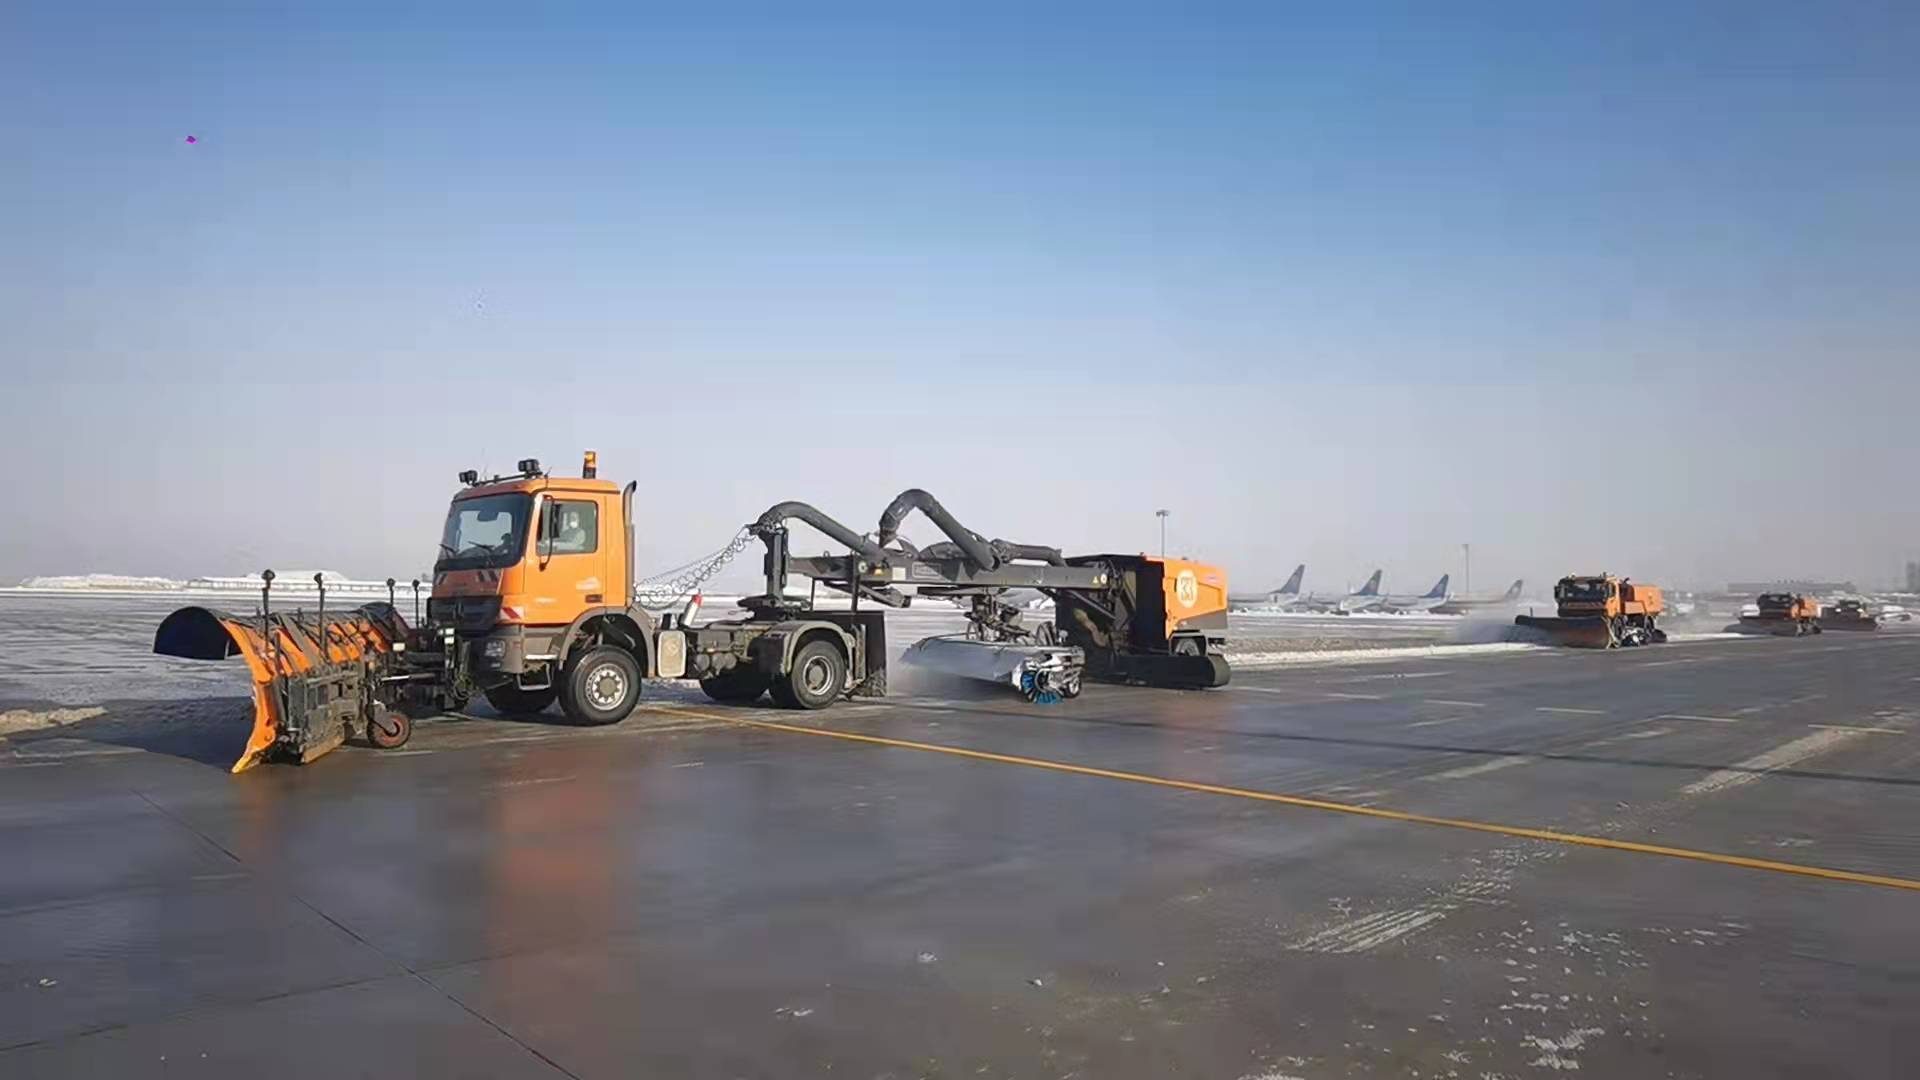 十八般兵器齐上阵乌鲁木齐地窝堡国际机场硬核除冰雪保运行